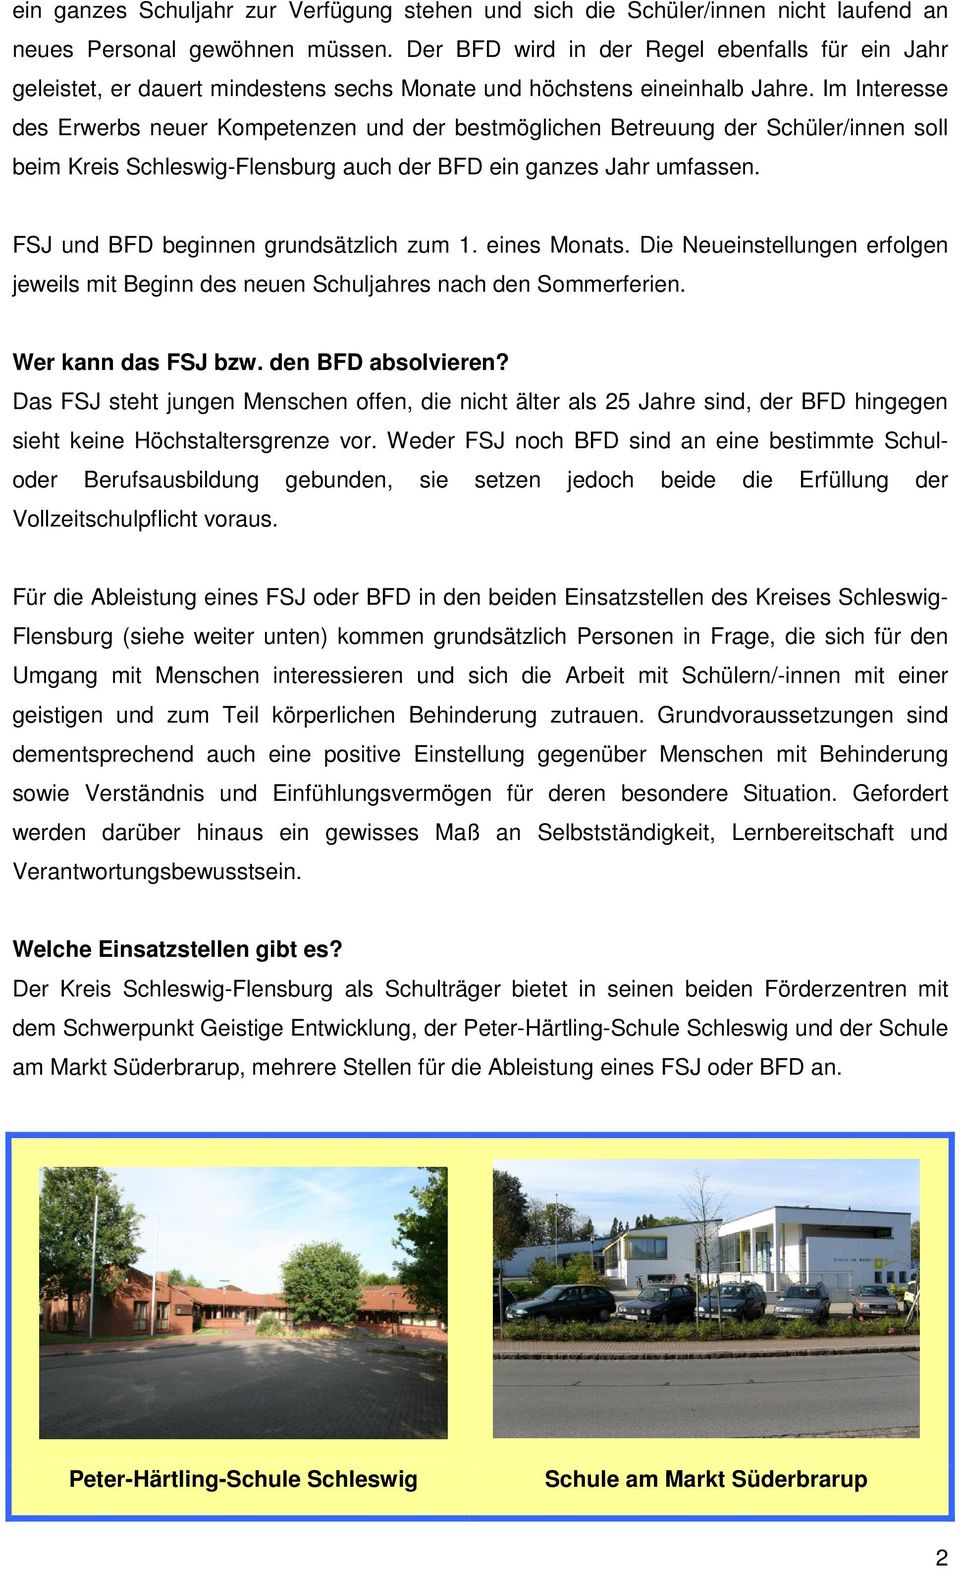 Im Interesse des Erwerbs neuer Kompetenzen und der bestmöglichen Betreuung der Schüler/innen soll beim Kreis Schleswig-Flensburg auch der BFD ein ganzes Jahr umfassen.